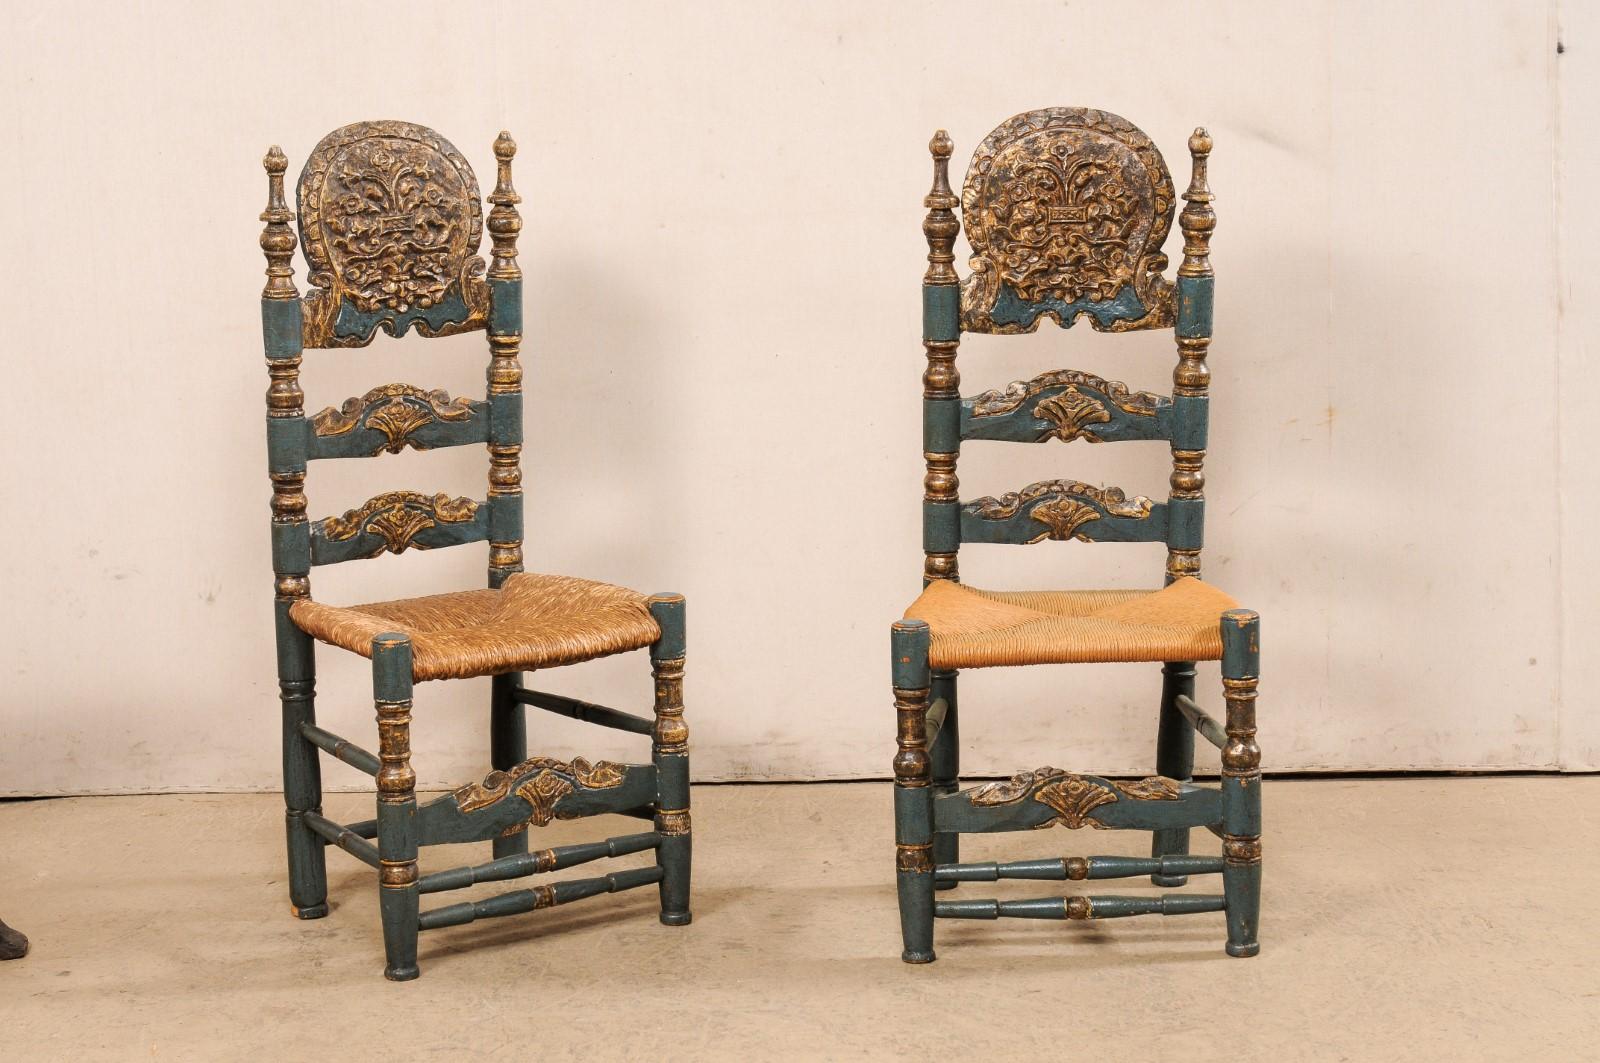 Paire de chaises à dossier en échelle en bois sculpté et peint, de style Coloni espagnol, avec des sièges à la va-vite. Cette paire de chaises vintage d'Espagne, conçue dans le style colonial espagnol du XVIIIe siècle, présente des appuis-tête